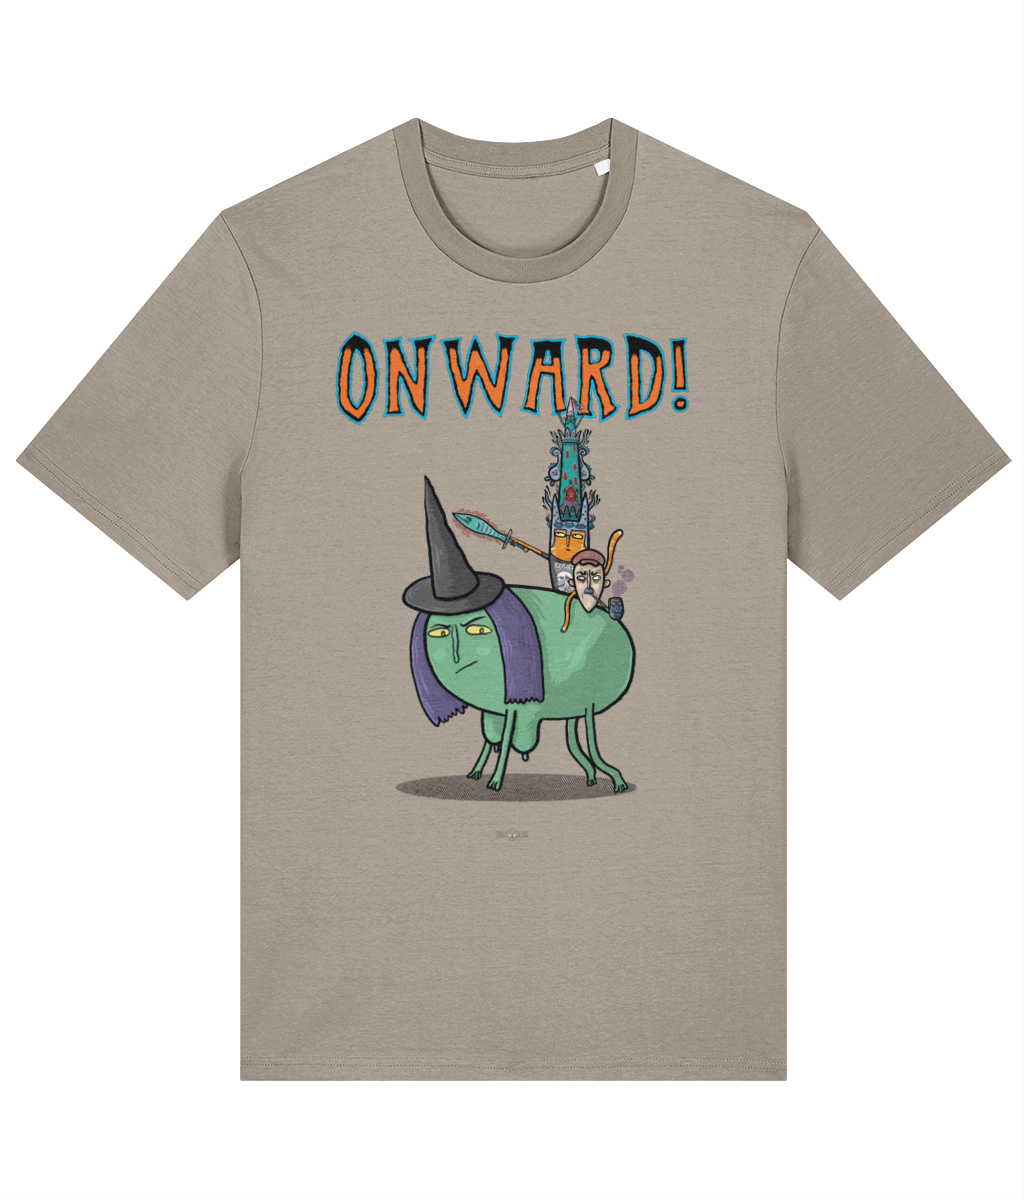 ONWARD! - Tussface T-shirt